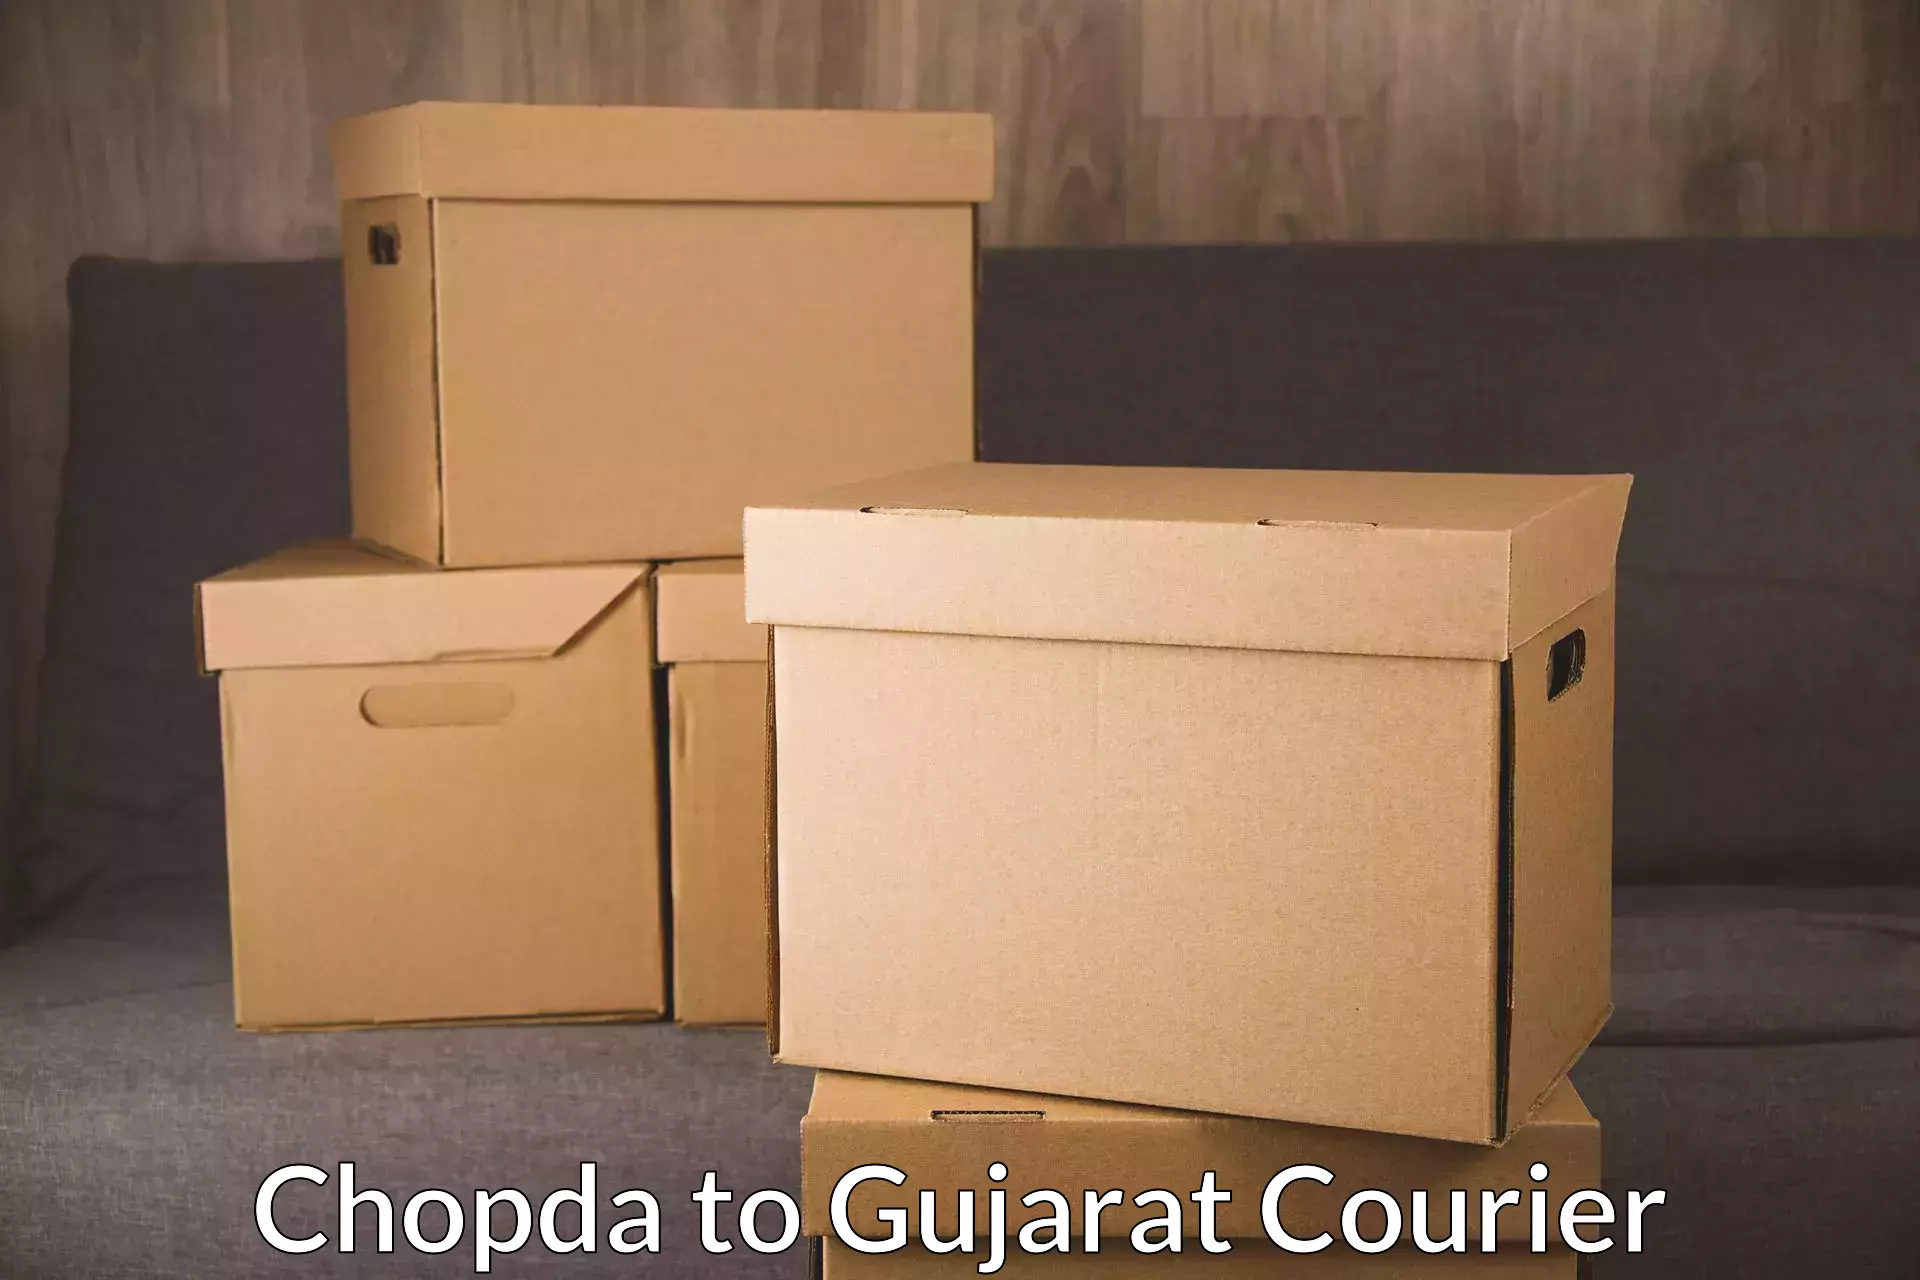 Modern courier technology Chopda to Gujarat